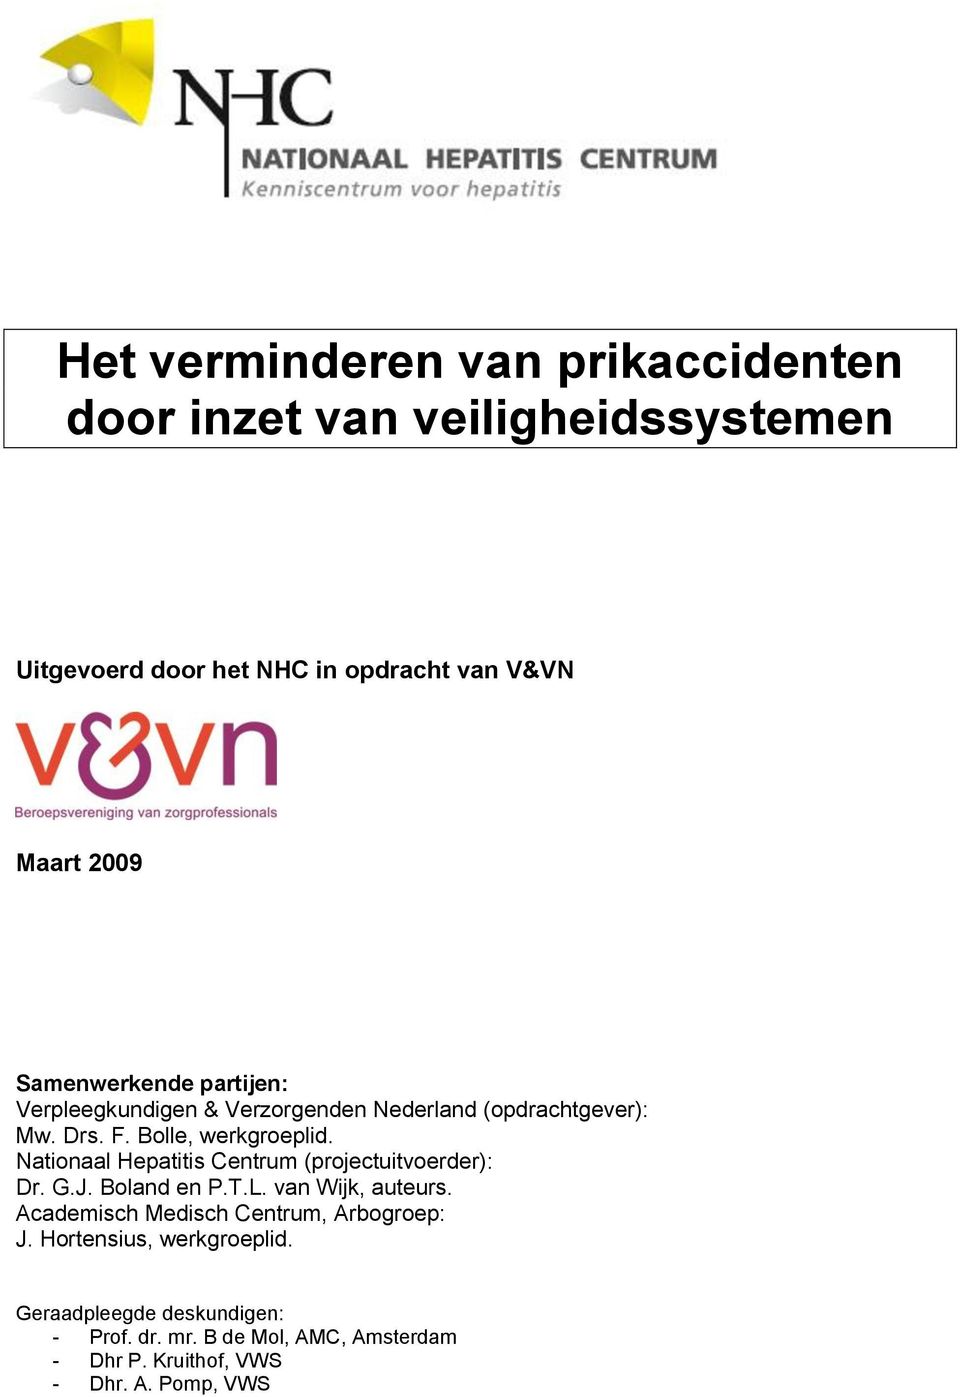 Nationaal Hepatitis Centrum (projectuitvoerder): Dr. G.J. Boland en P.T.L. van Wijk, auteurs.